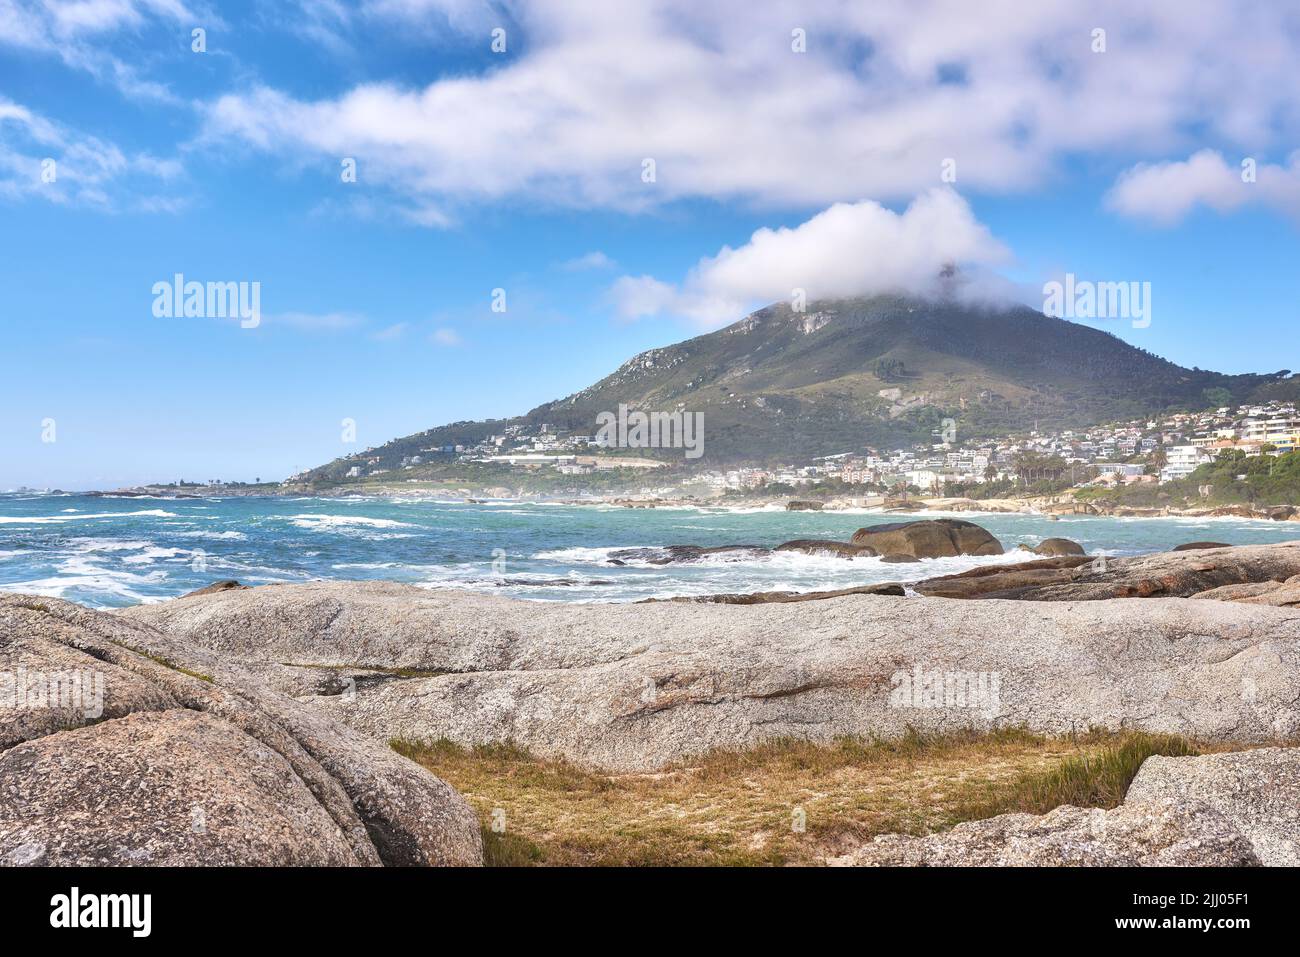 Schöne Landschaft eines Strandes in der Nähe eines Berges in einer Küstenstadt mit einem bewölkten blauen Himmel im Sommer. Große Felsen im Meer umgeben von Natur in einem Stockfoto